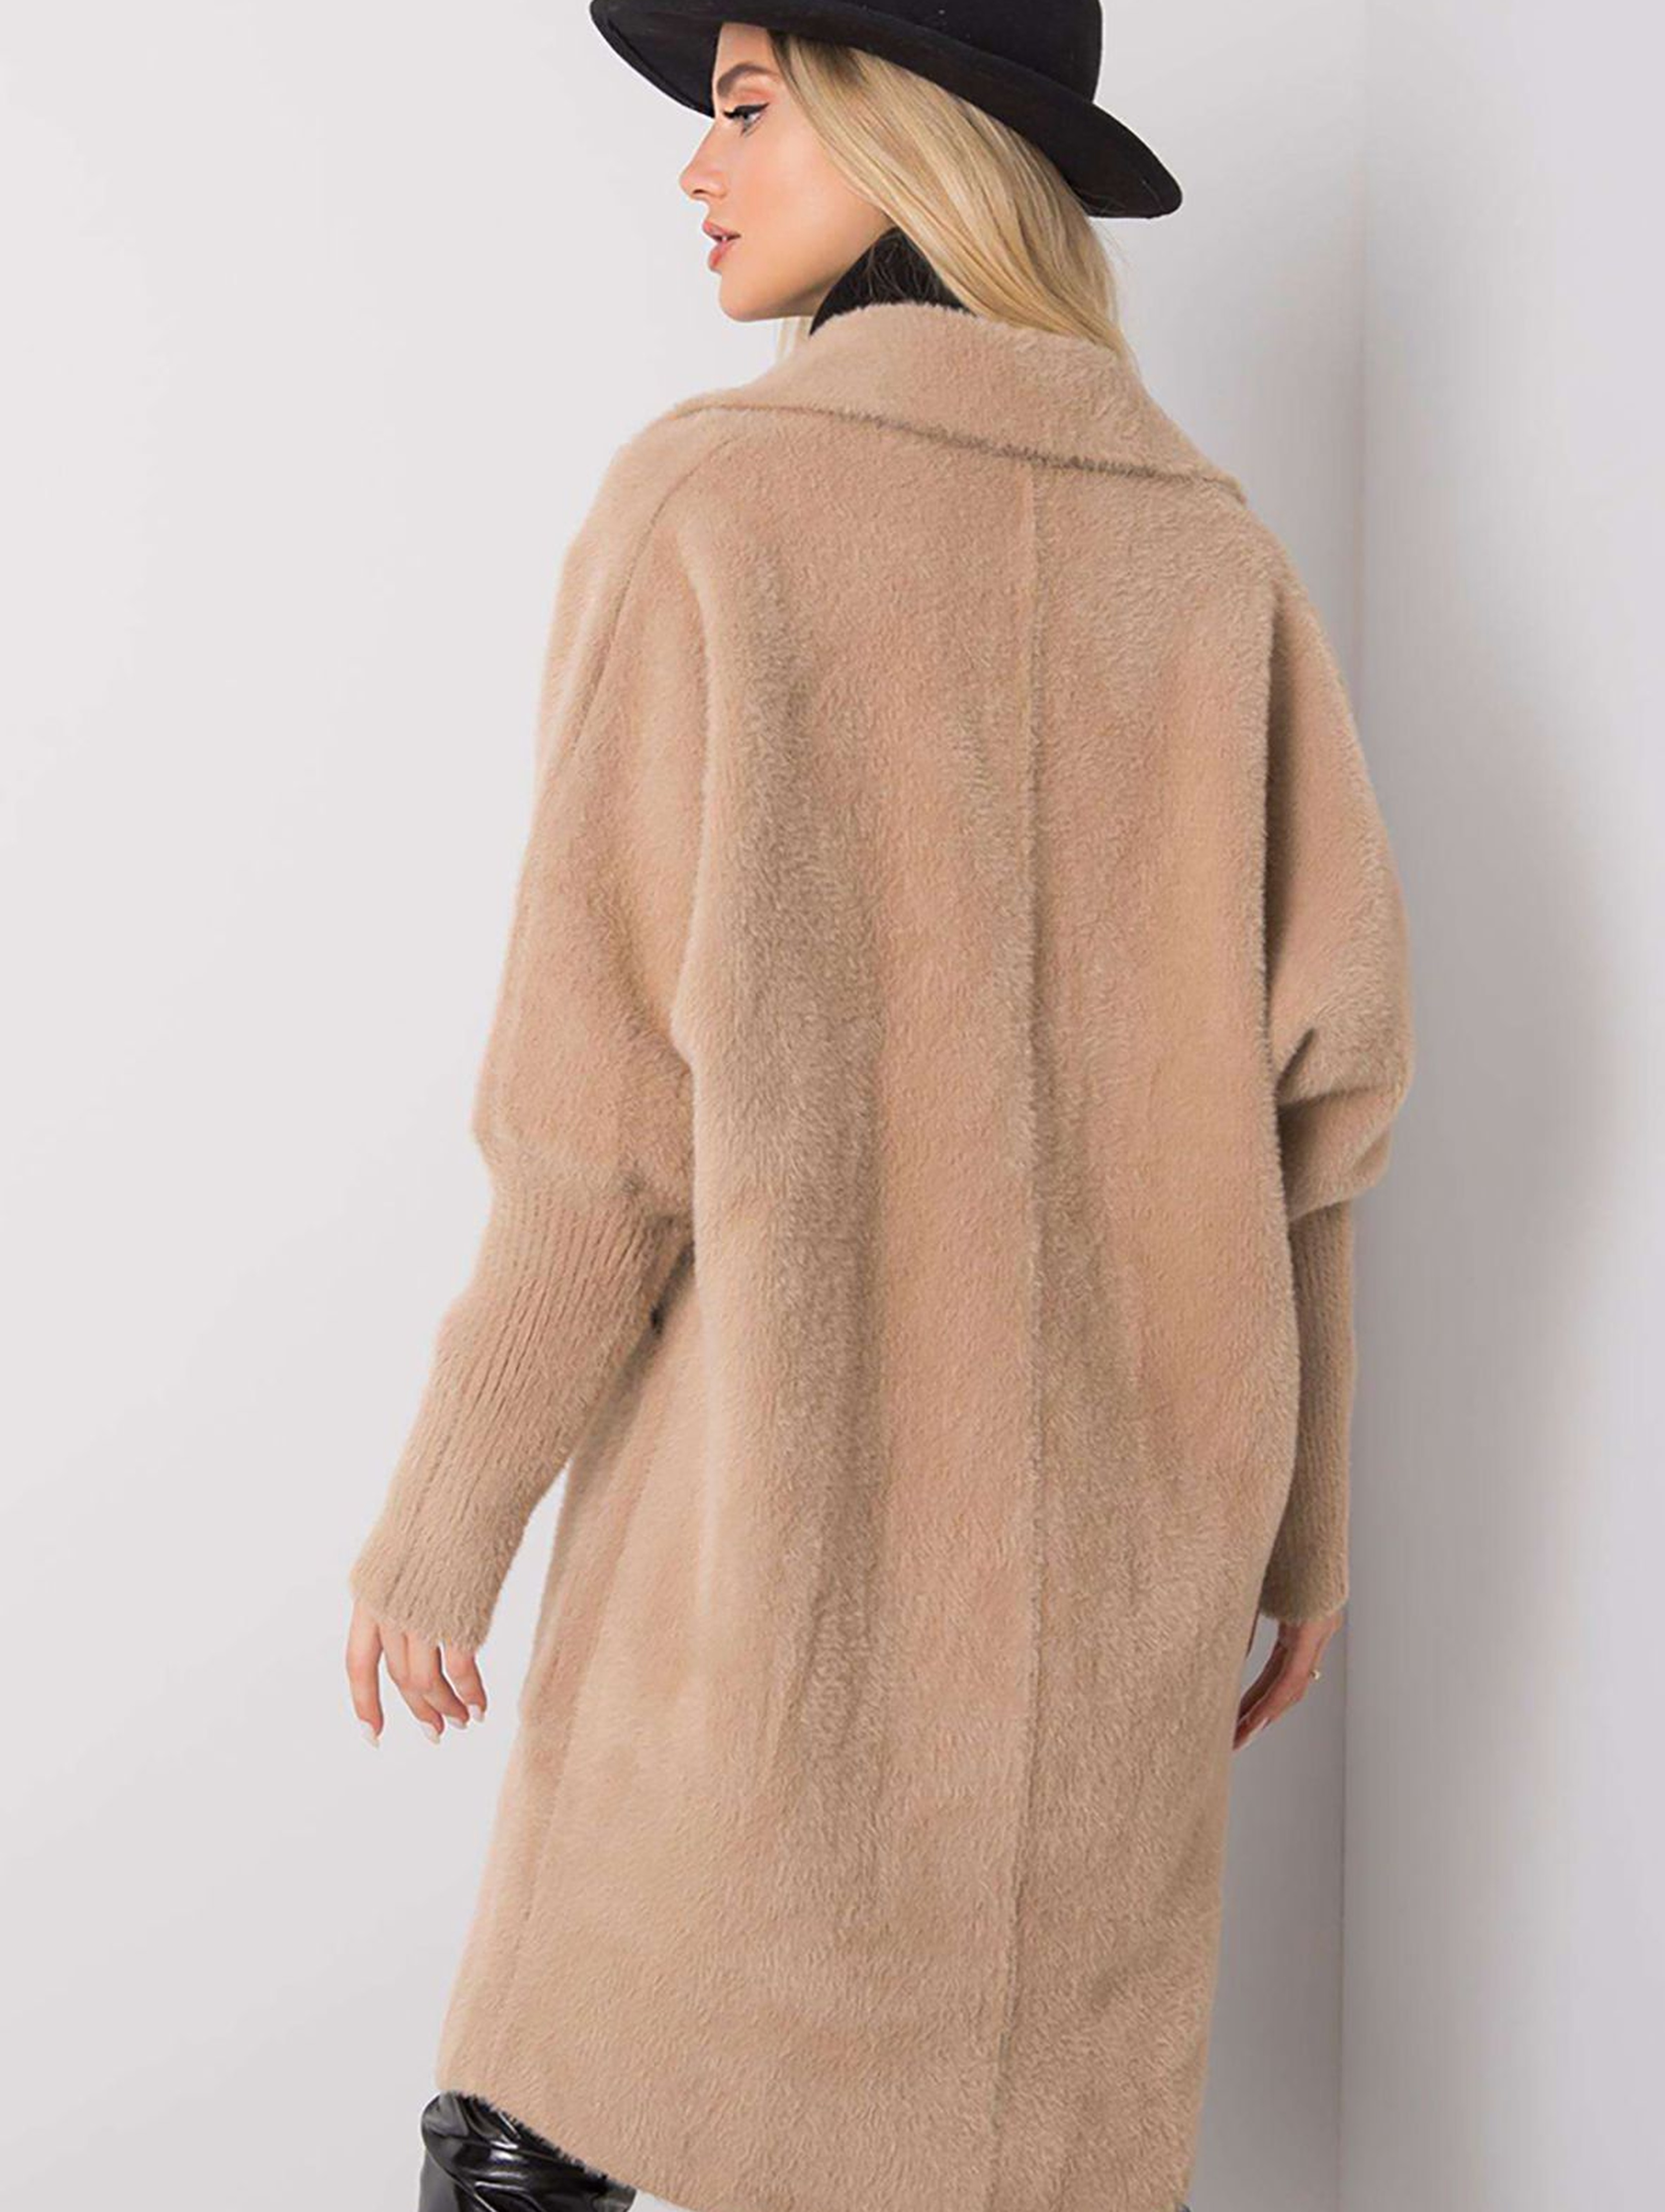 Beżowy płaszcz alpaka z kieszeniami rozmiar S/M